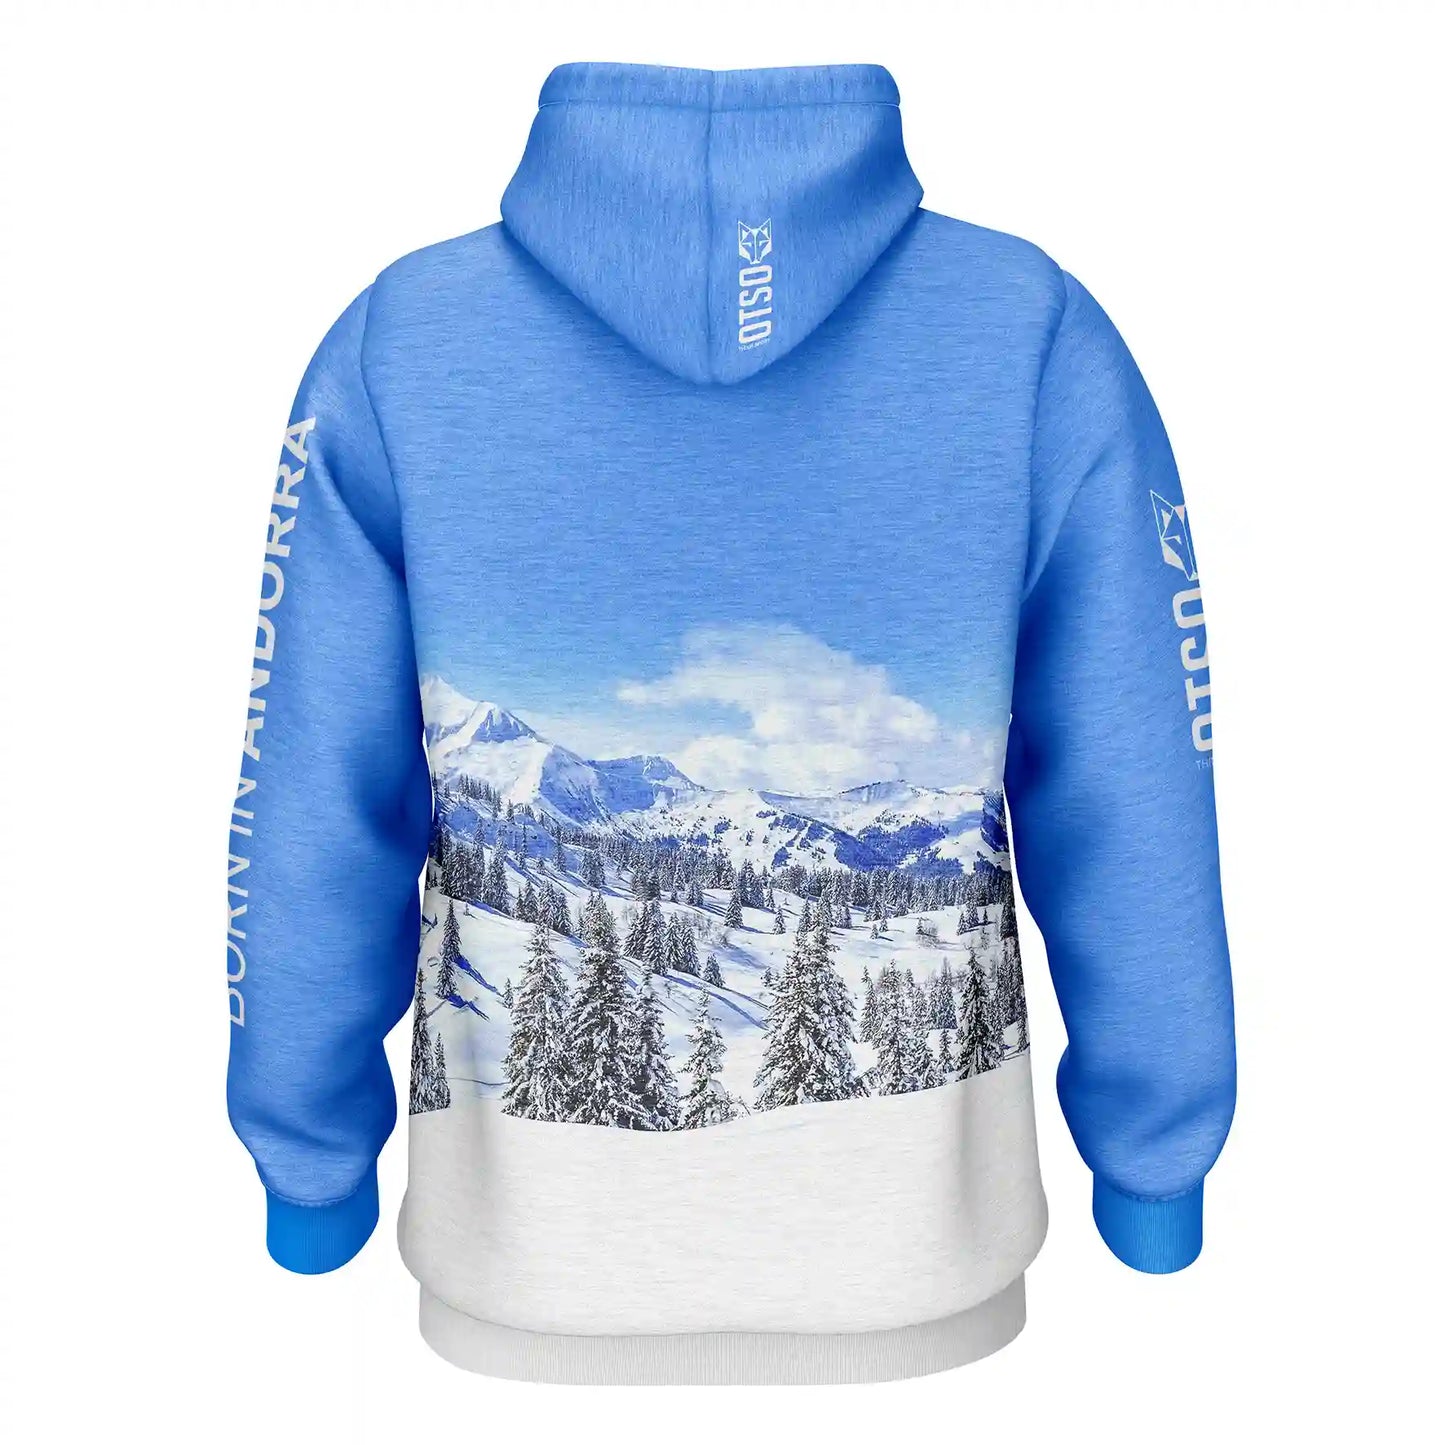 Snow Forest sweatshirt